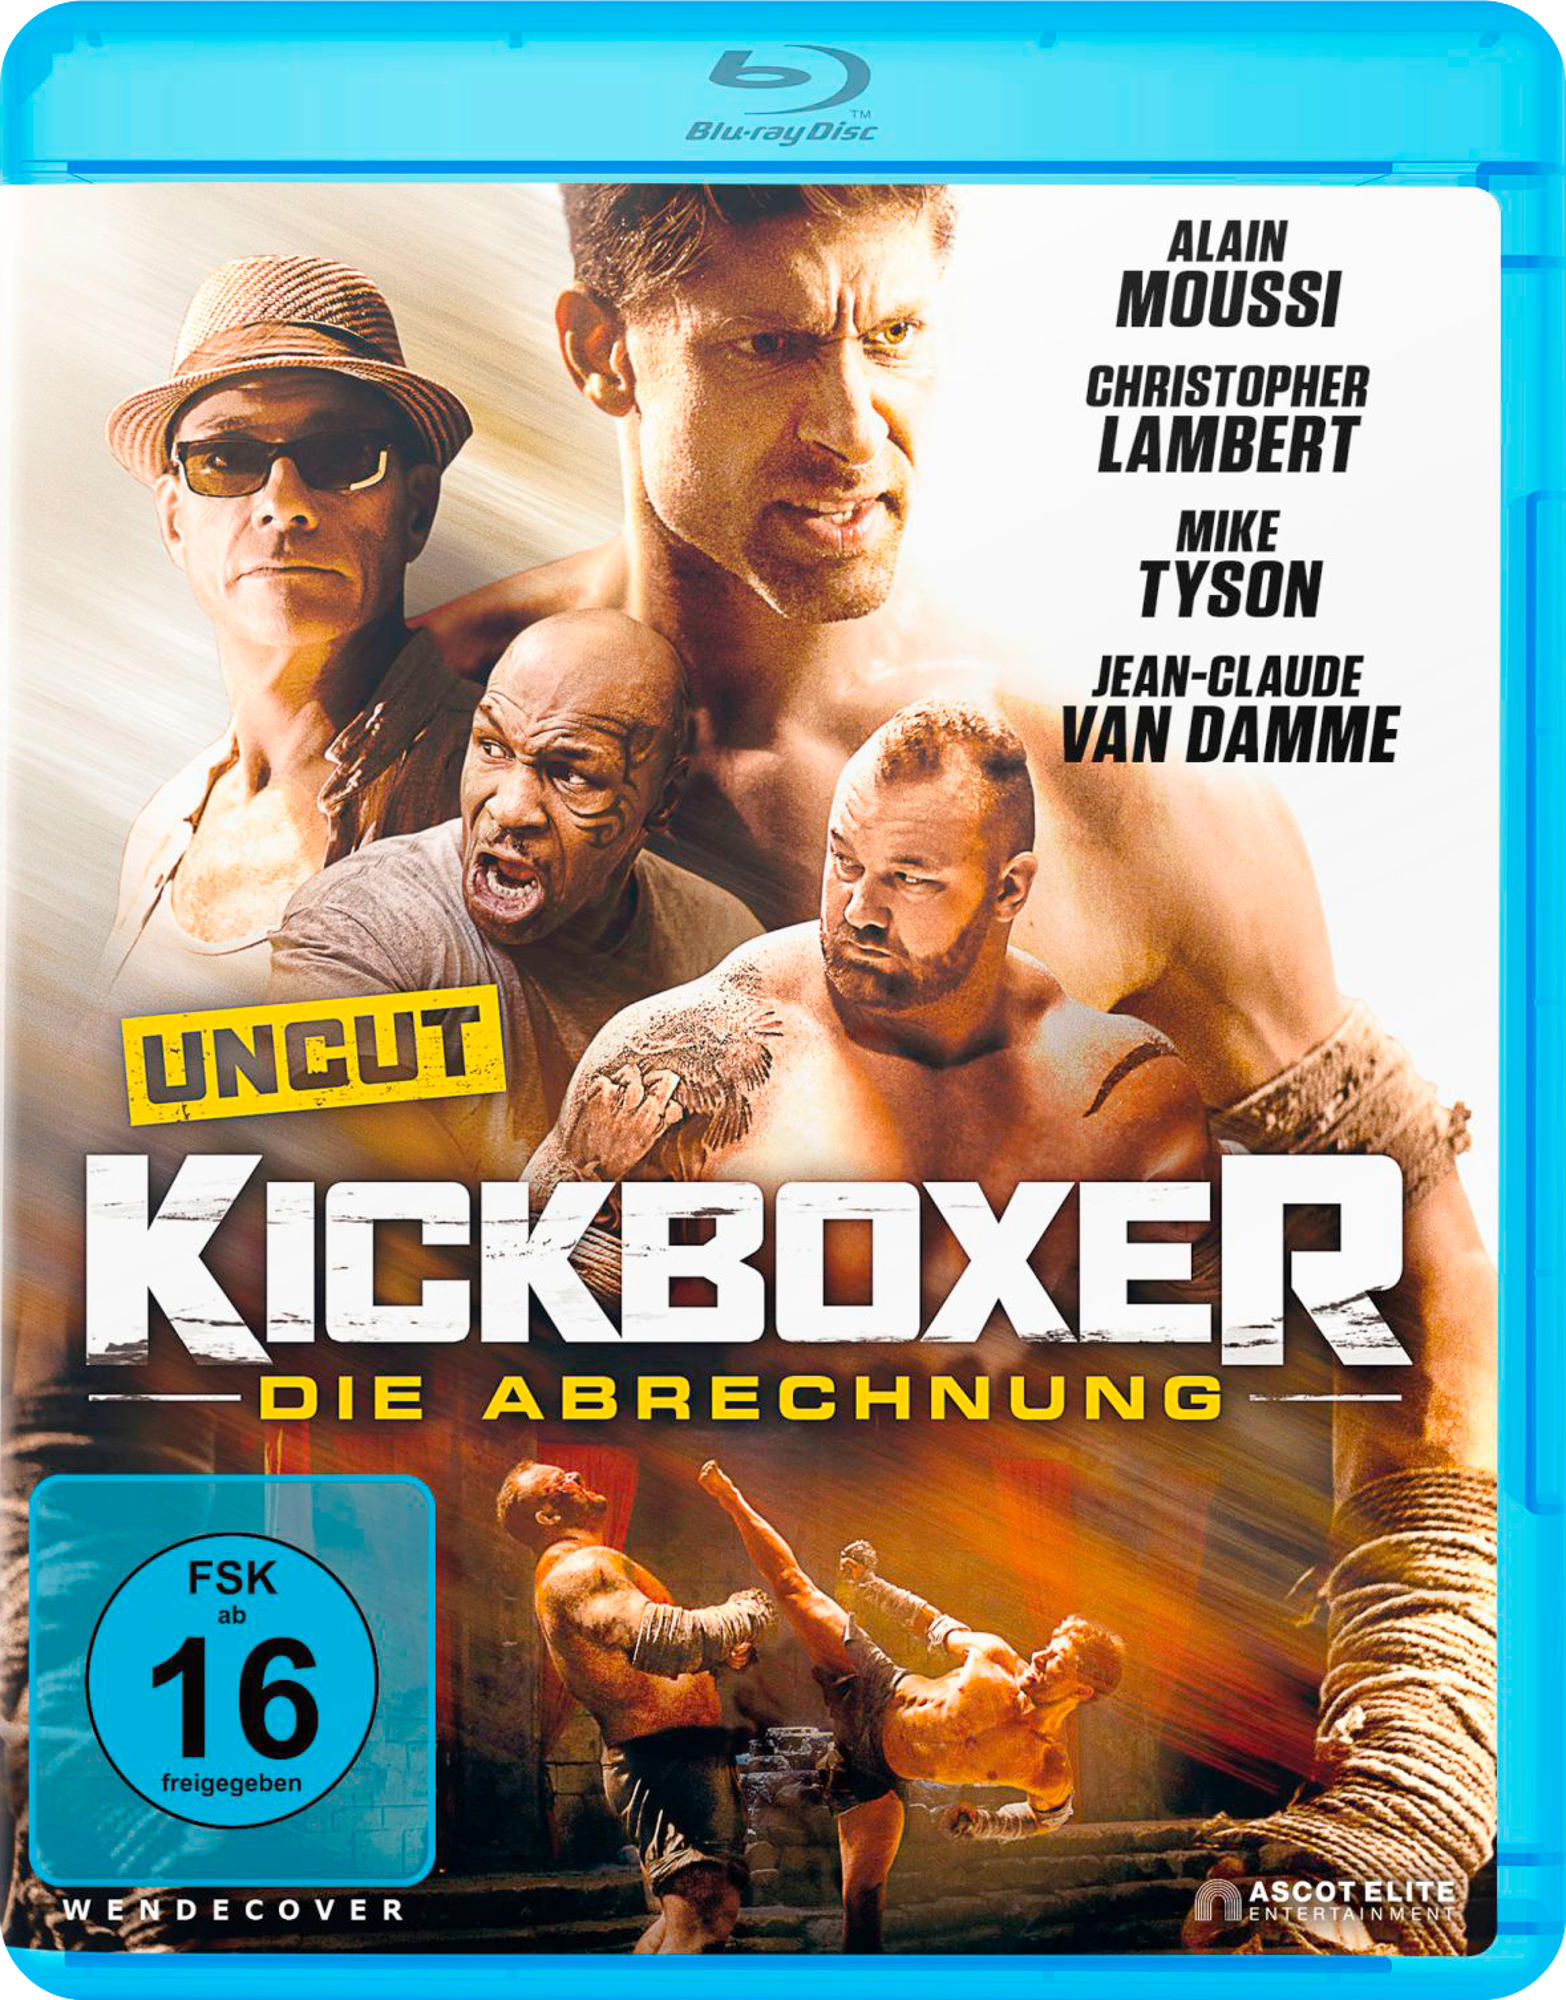 Abrechnung Blu-ray Die Kickboxer: